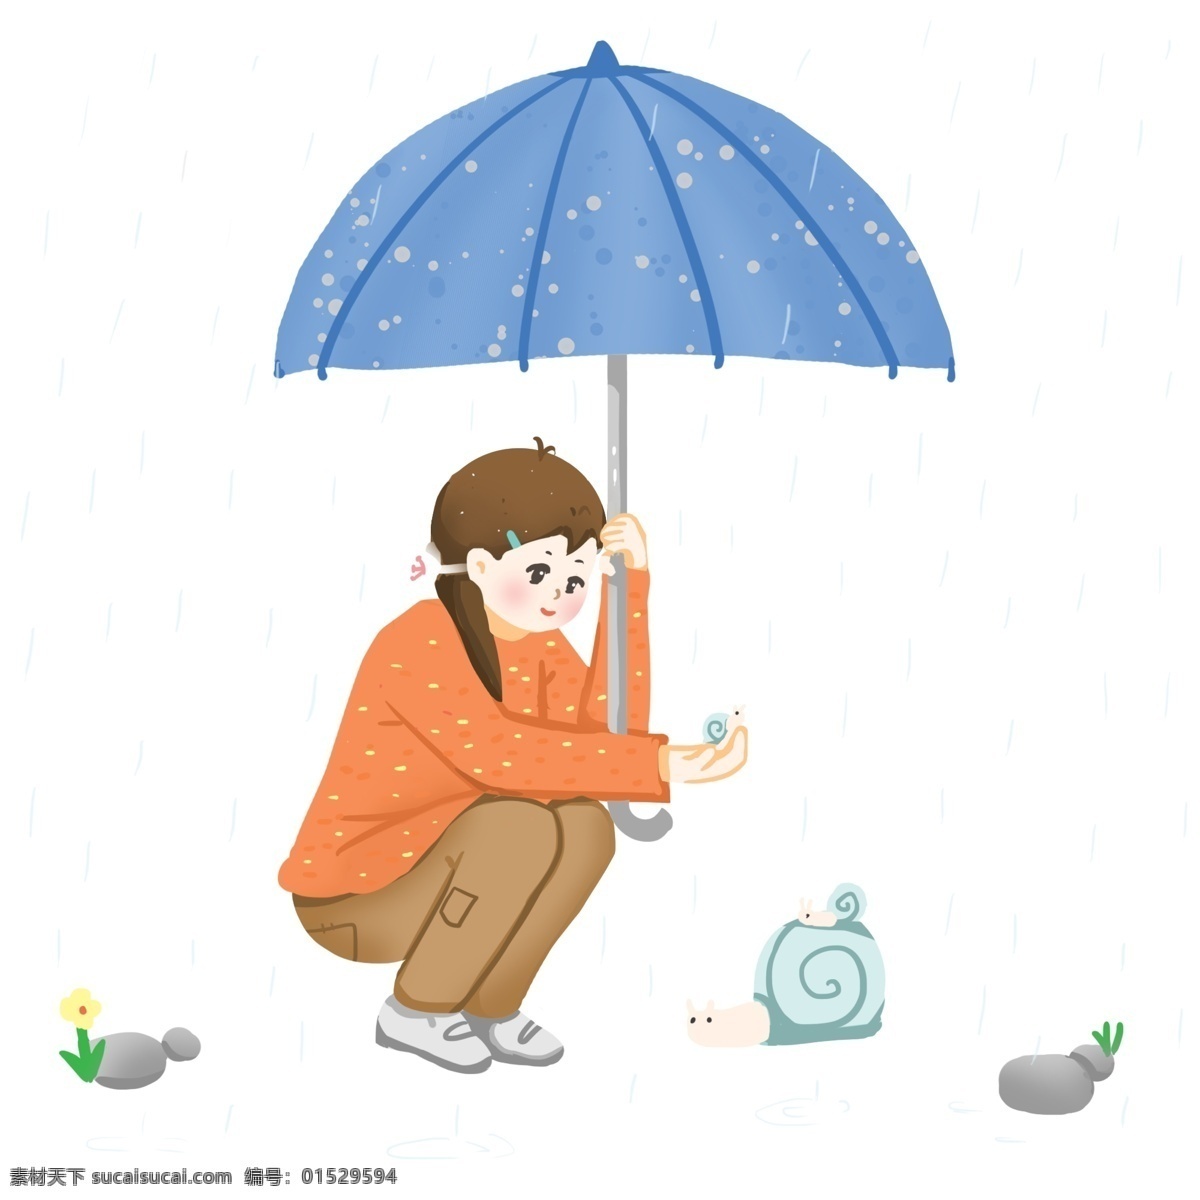 谷雨 人物 蜗牛 插画 谷雨人物插画 蓝色的蜗牛 漂亮的小女孩 打伞的小女孩 蓝色的雨伞 卡通人物